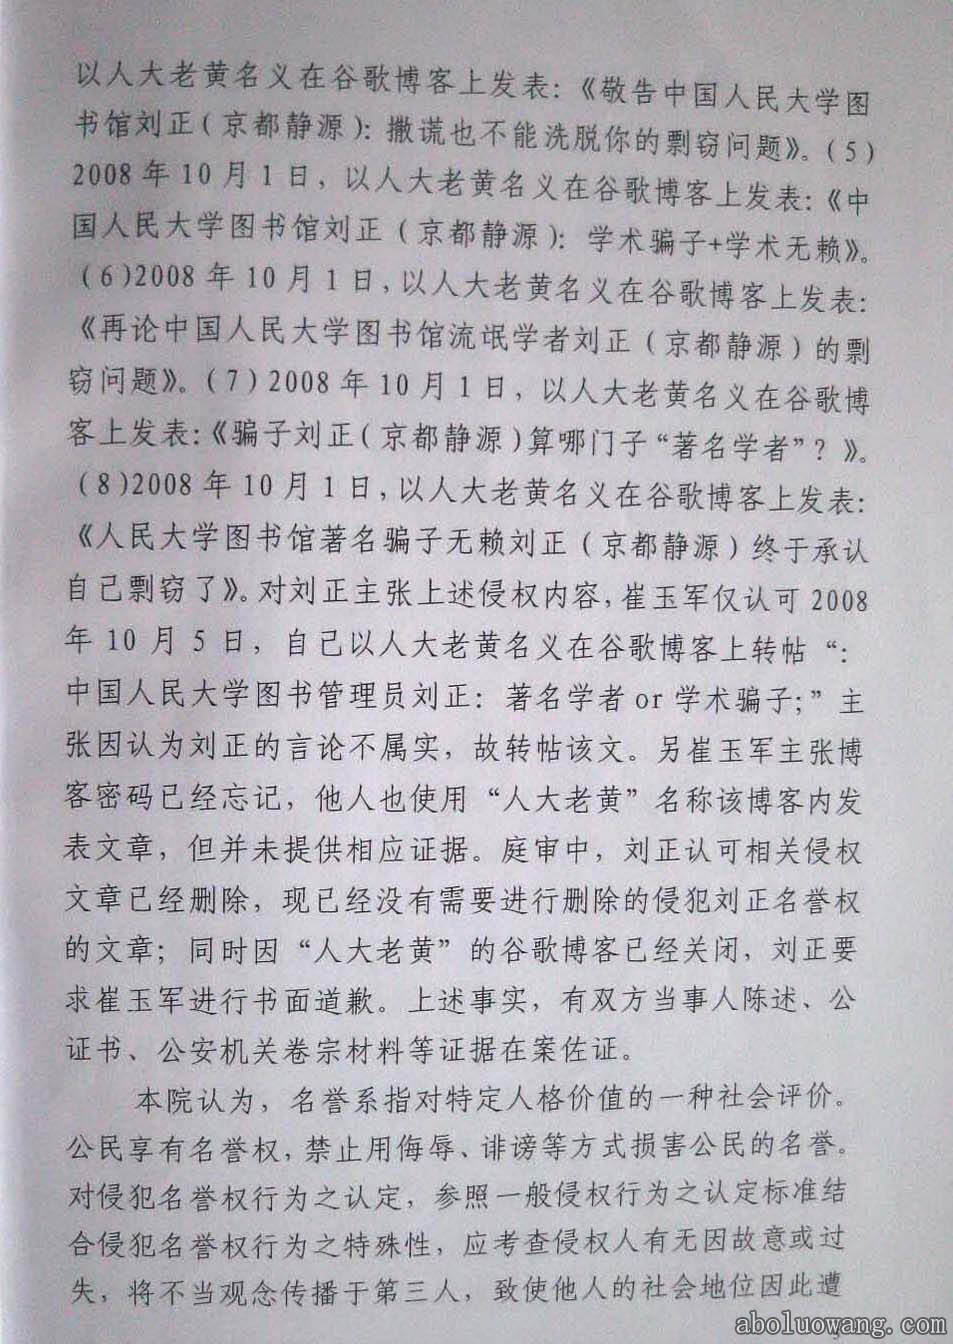 方克立弟子崔玉军诽谤刘正教授法庭初审判决书5